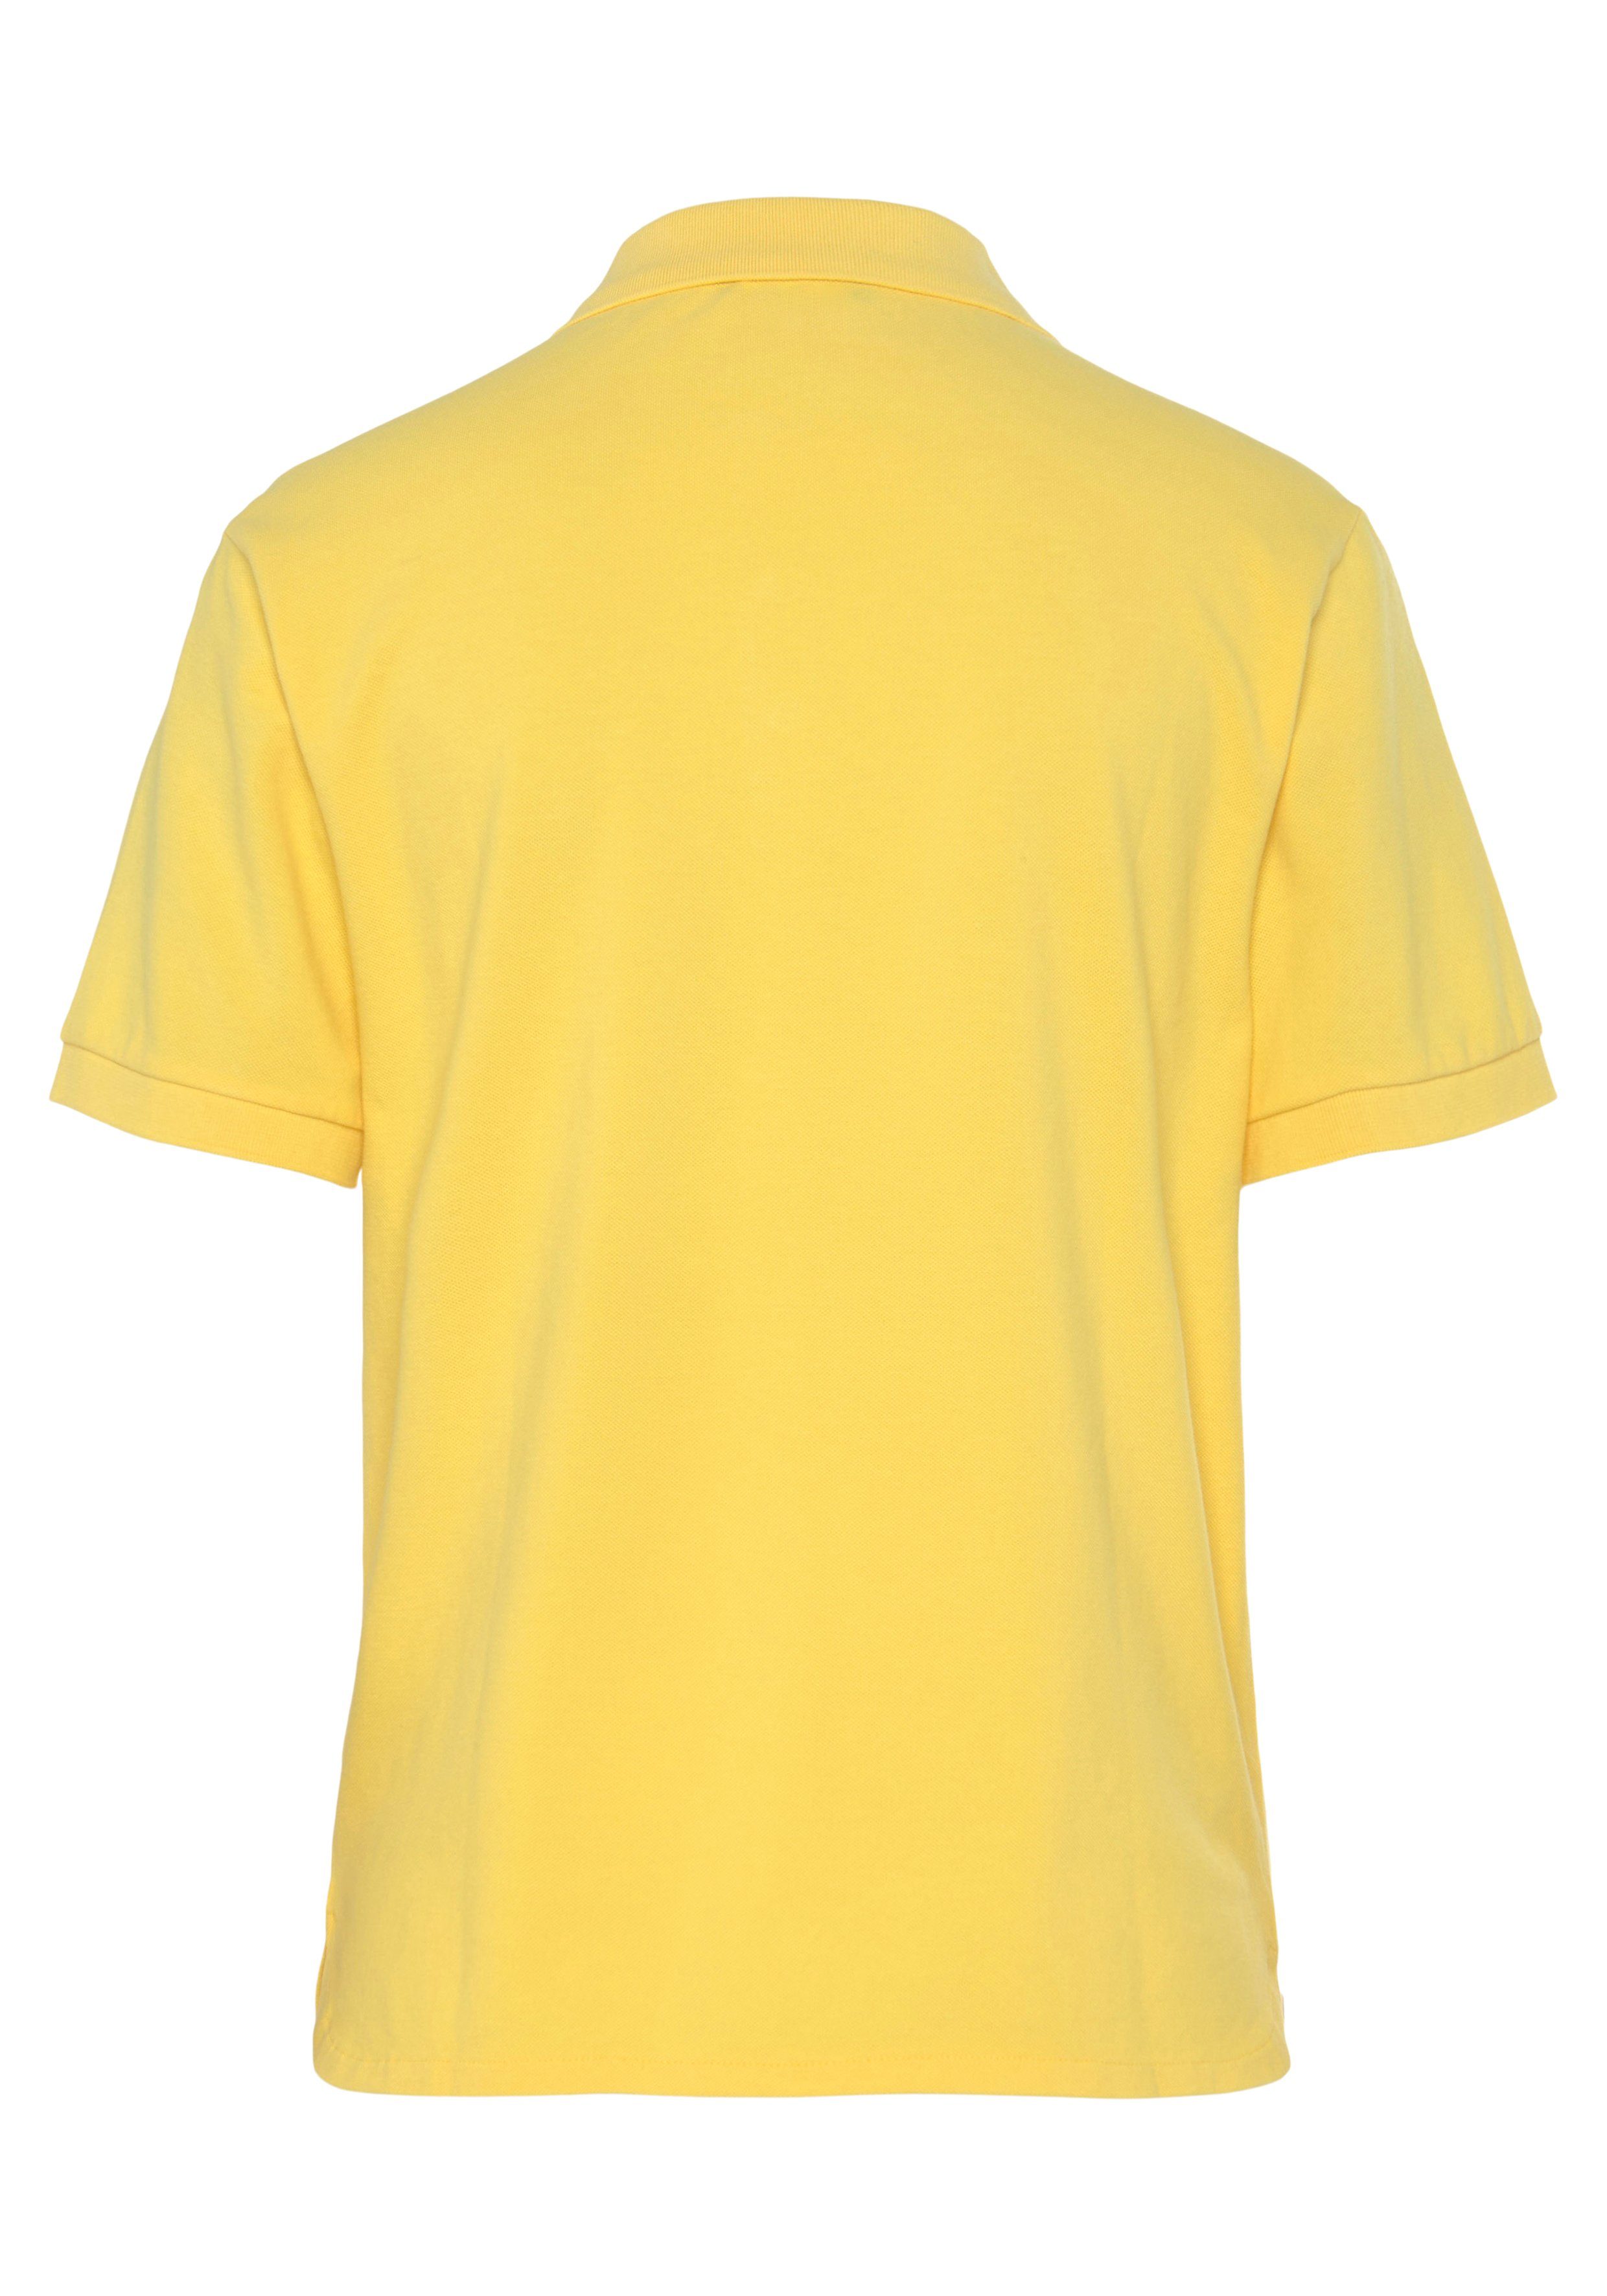 Benetton Knöpfen of Colors gelb Poloshirt perlmuttfarbenen United mit